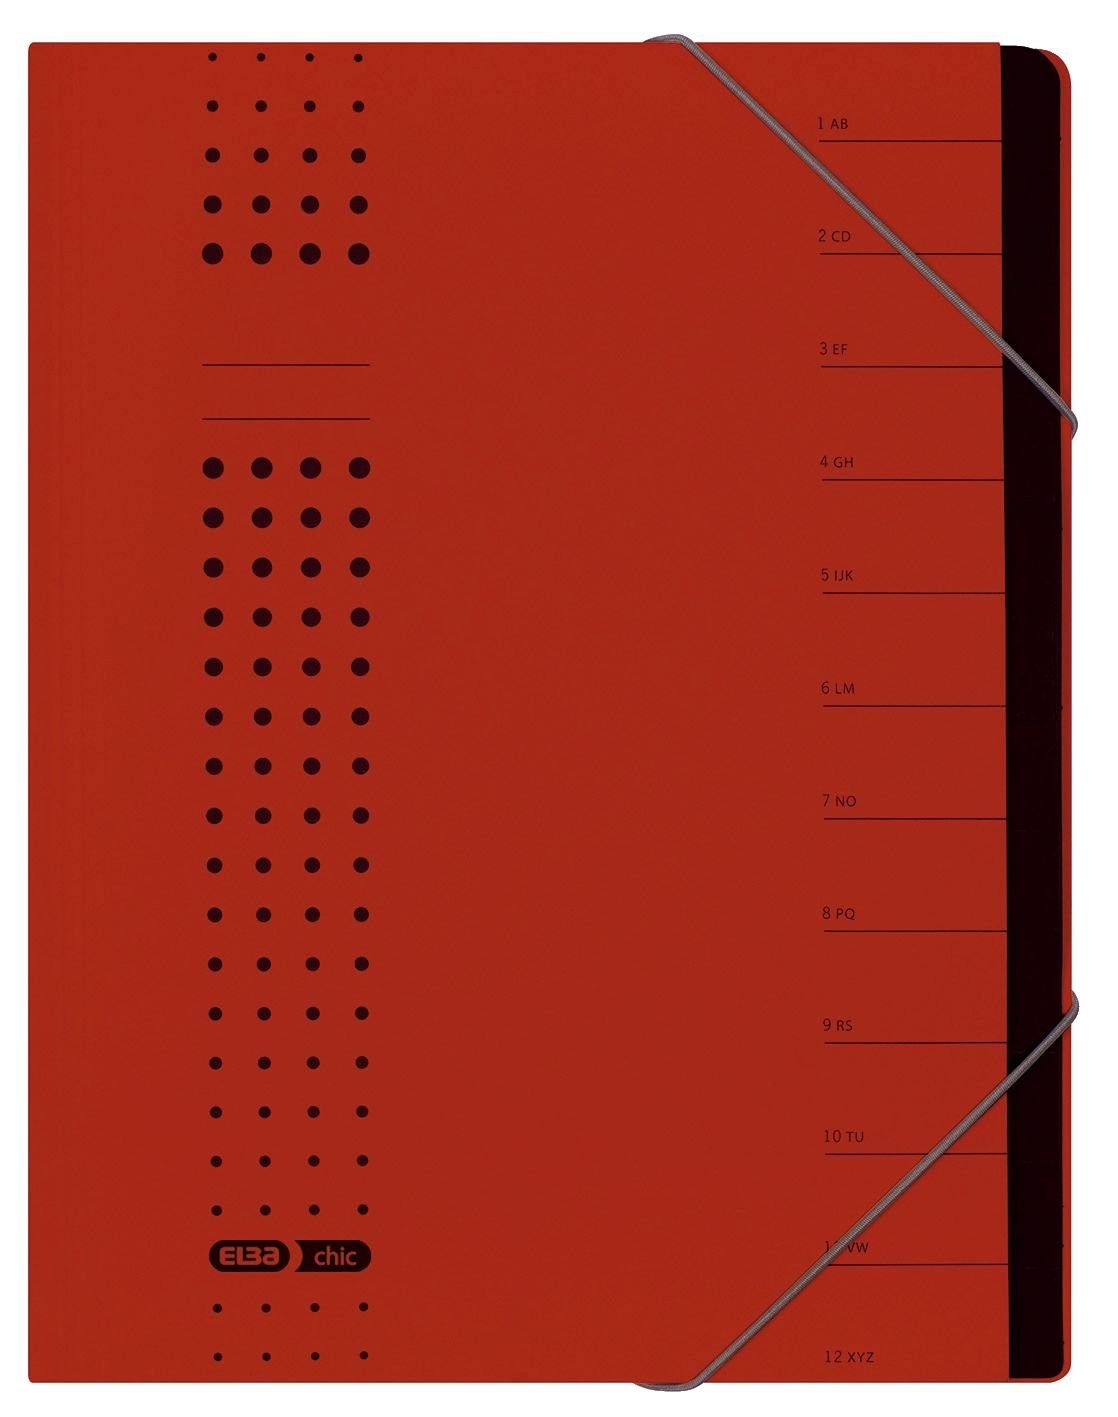 ELBA chic-Ordnungsmappe, A4 Schreibmappe Fächer ELBA 1-12, rot, Karton